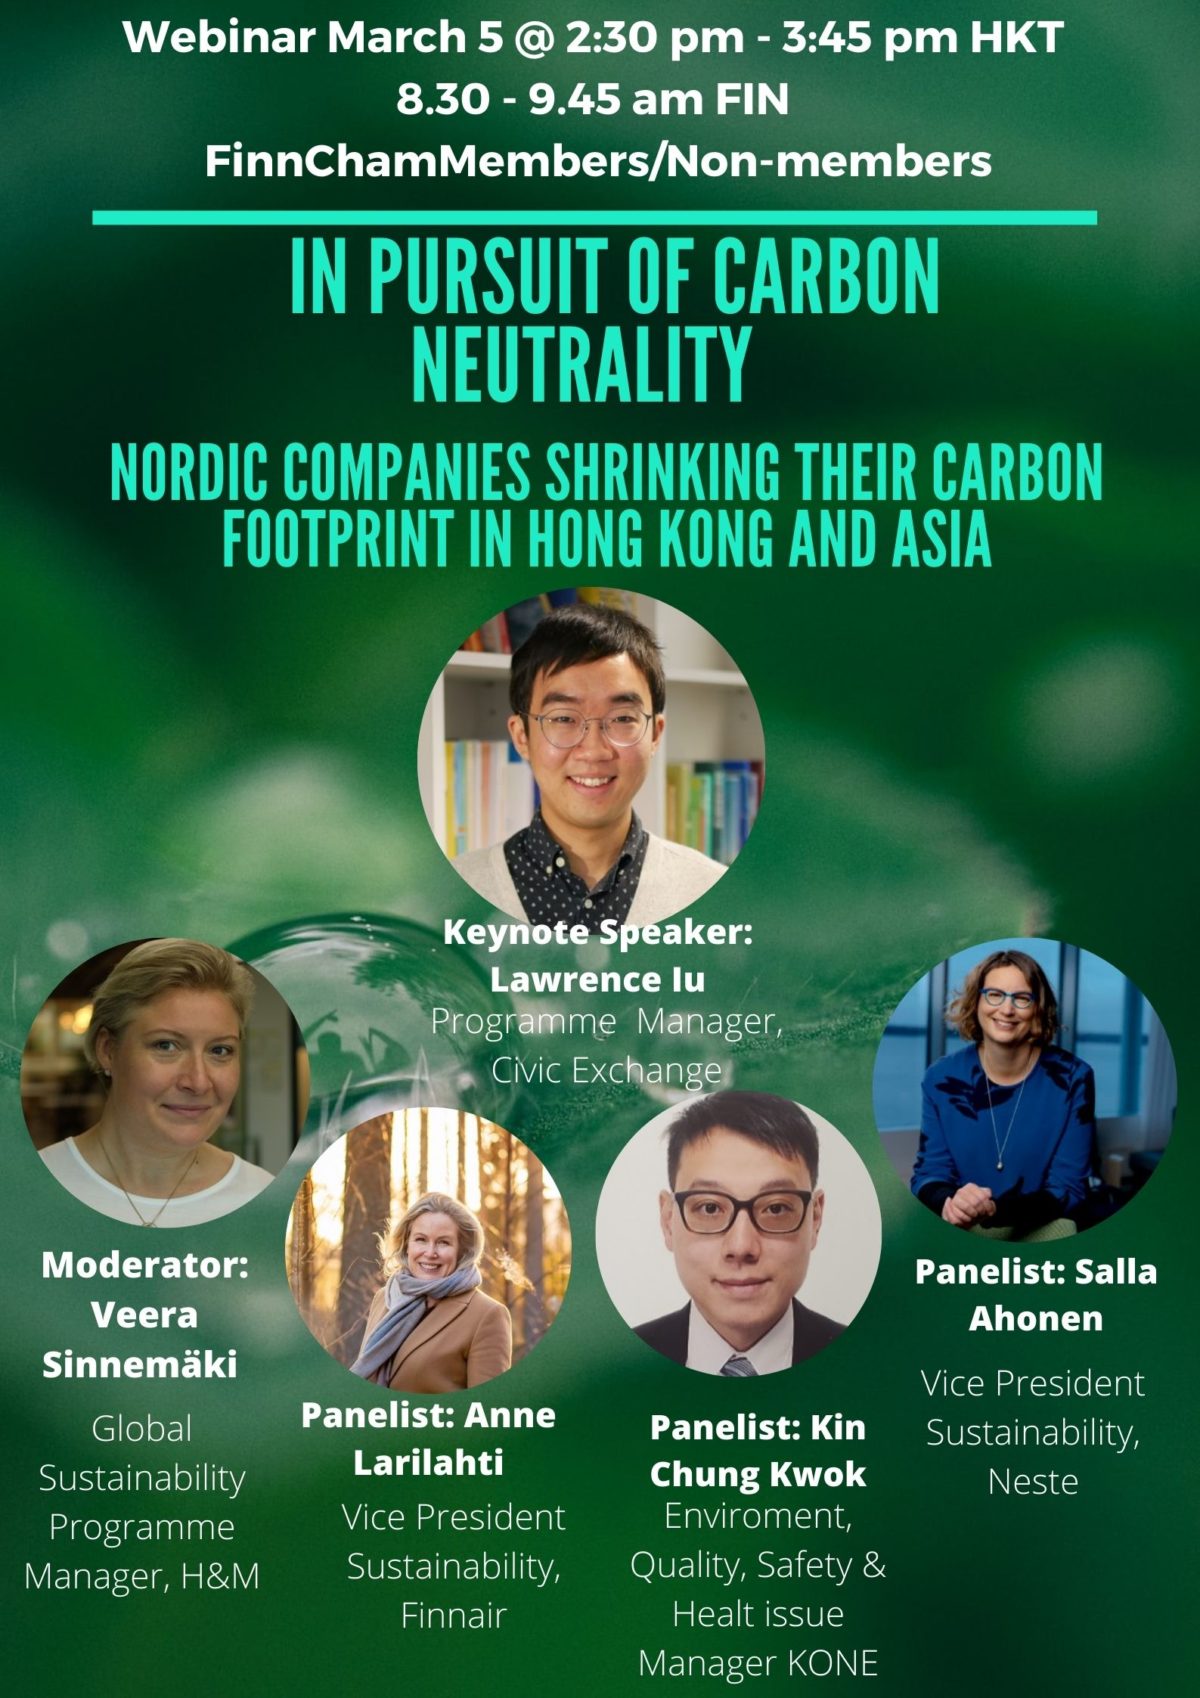 FinnCham next webinar will discuss Carbon Neutral Hong Kong